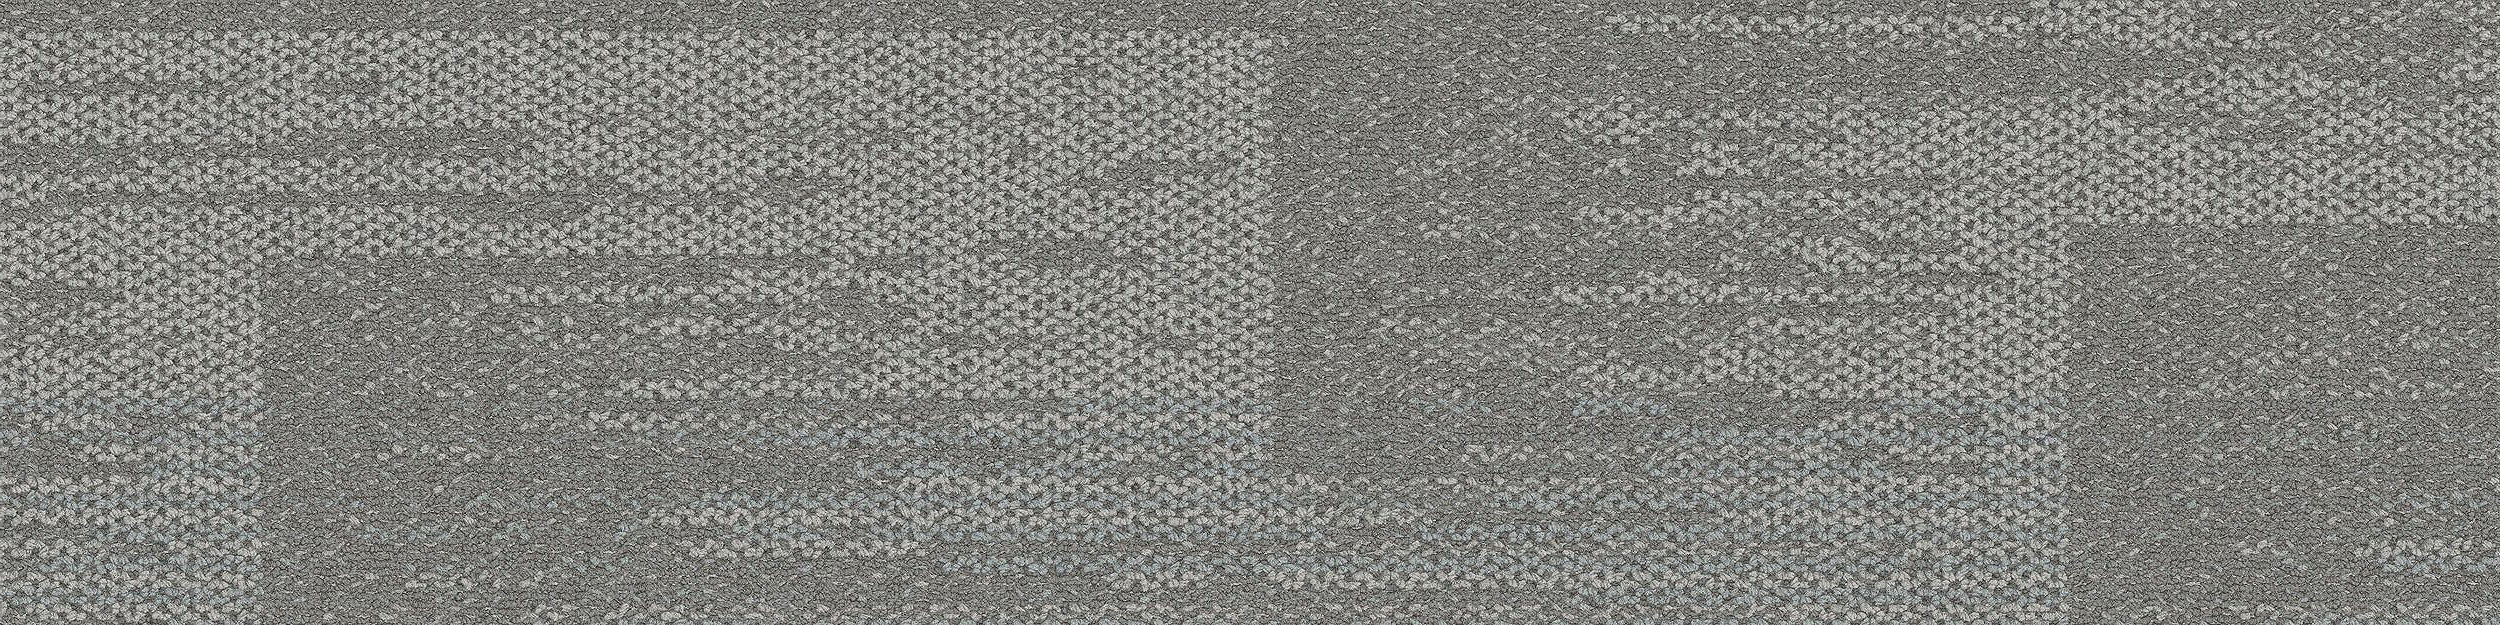 AE311 Carpet Tile In Mist image number 14